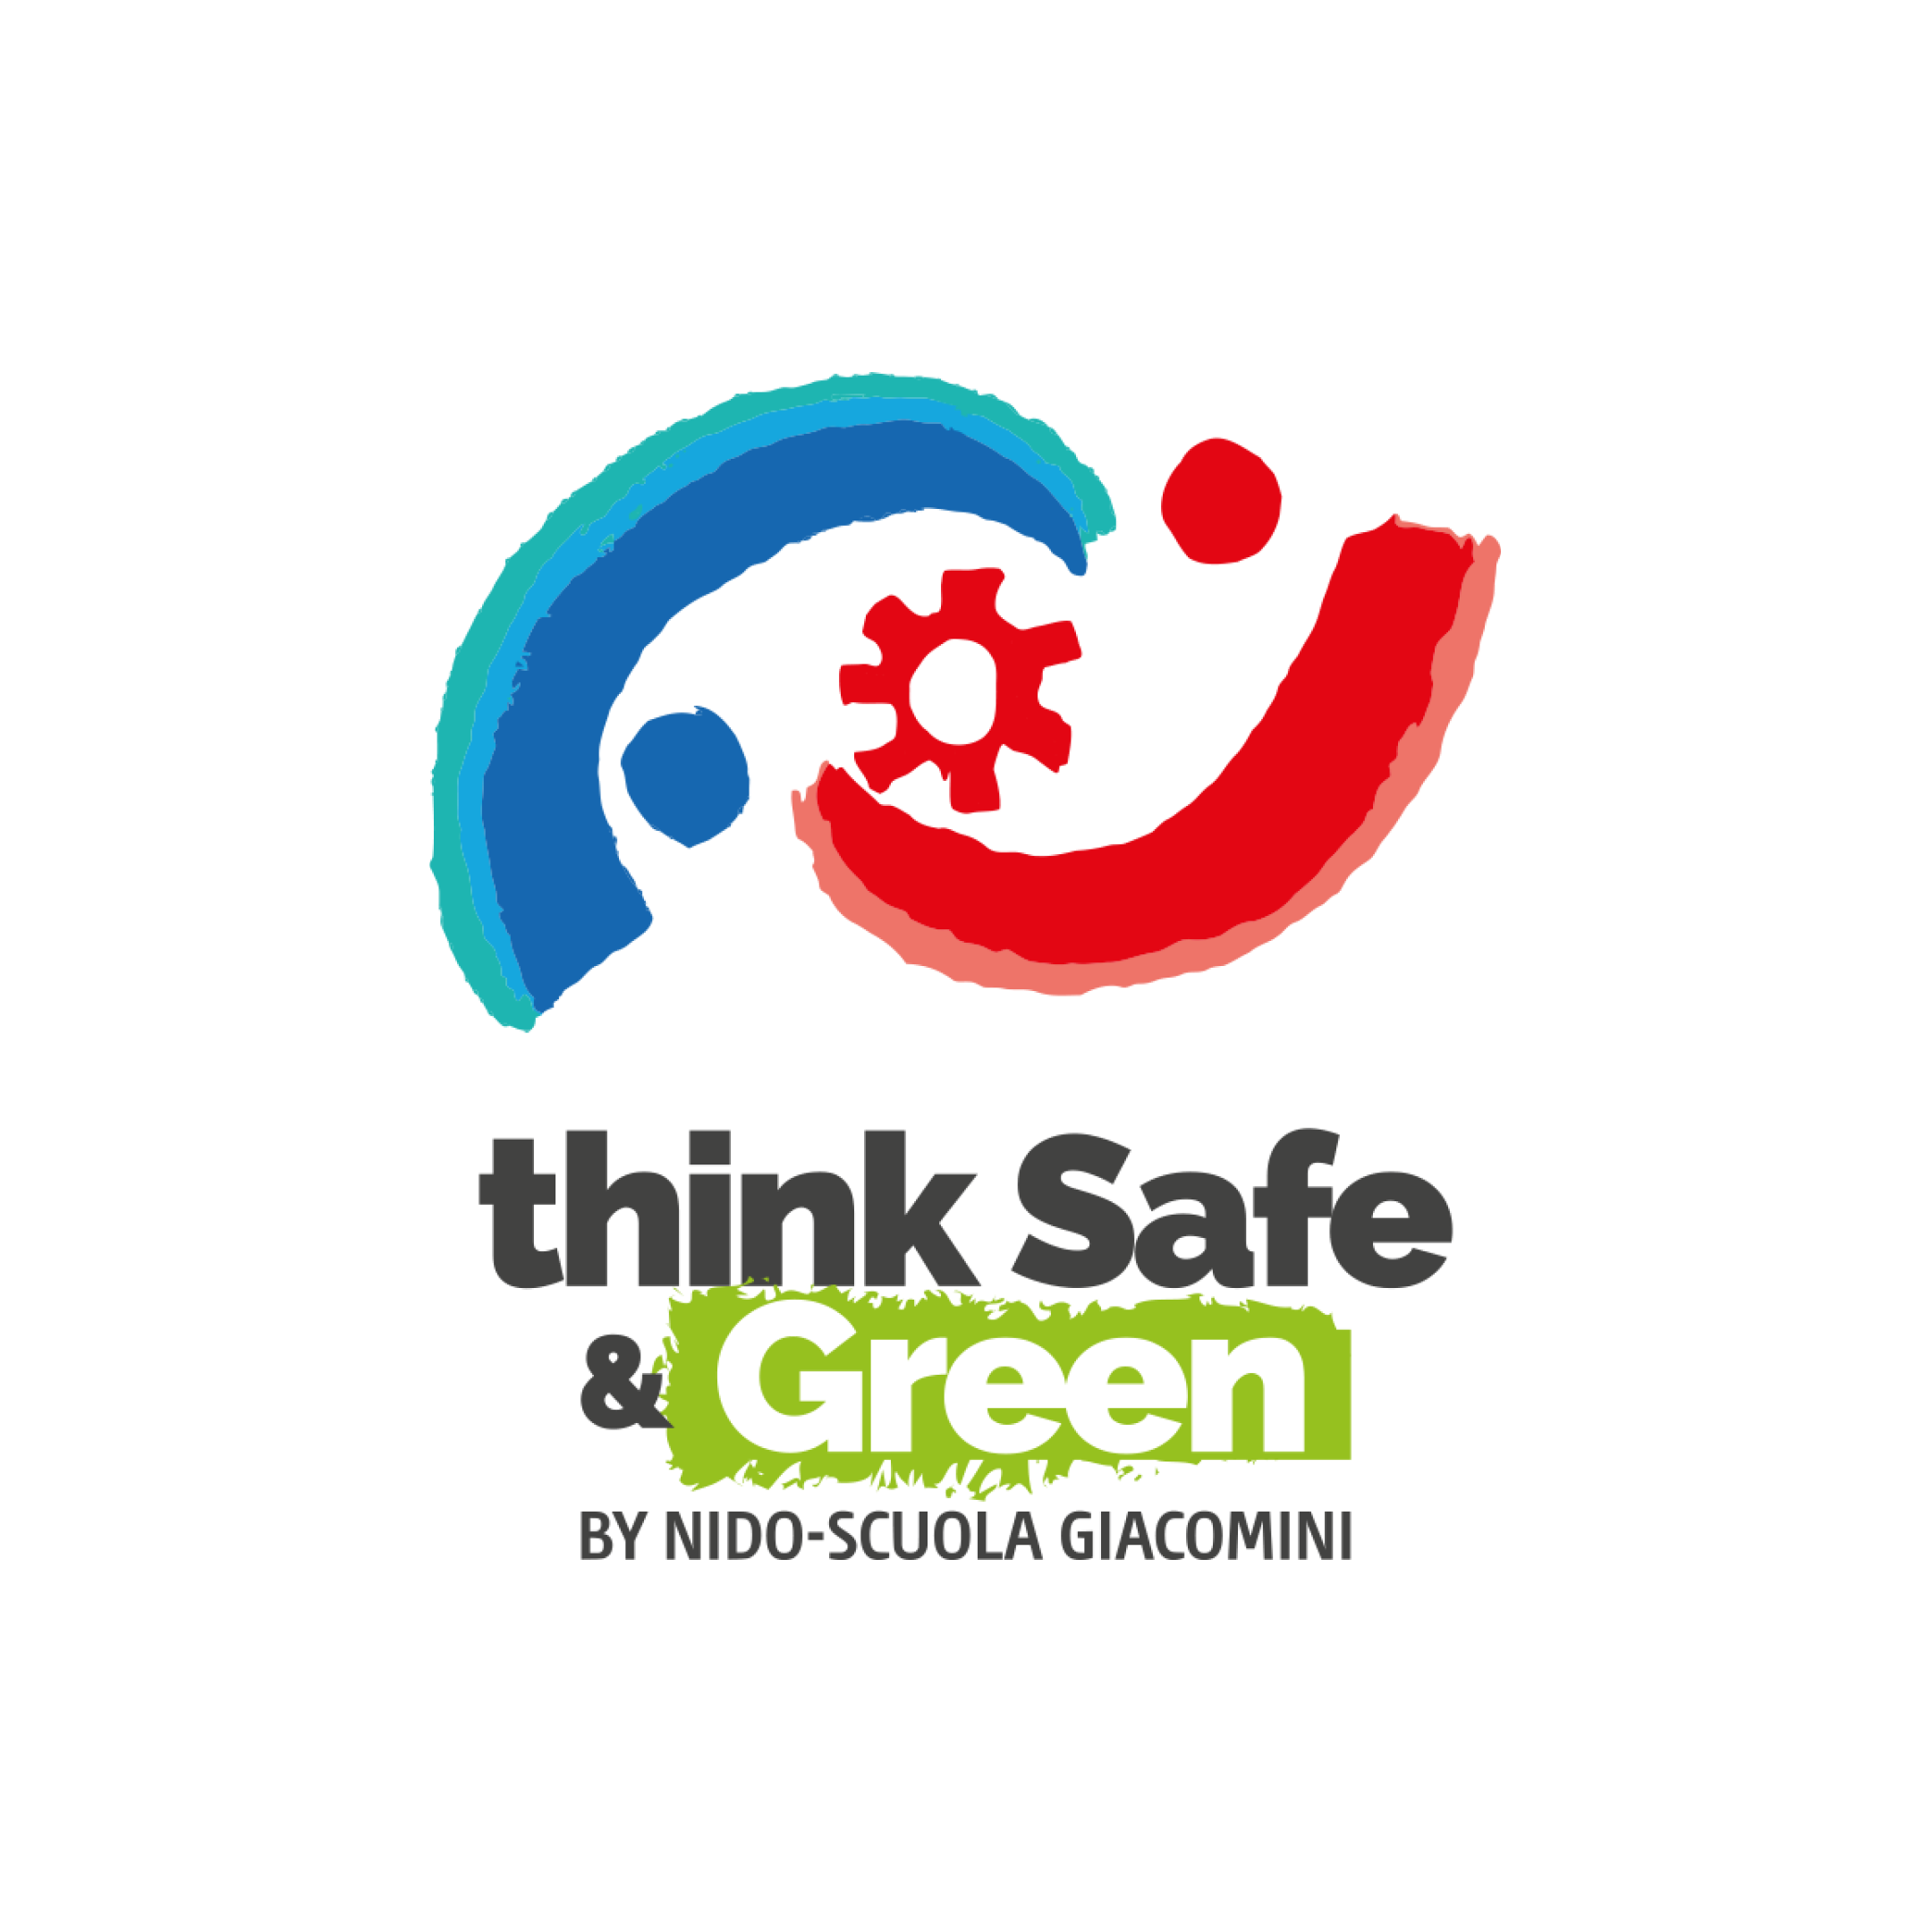 Logo “Think Safe & Green” disegnato dai bambini del Nido-scuola Giacomini 